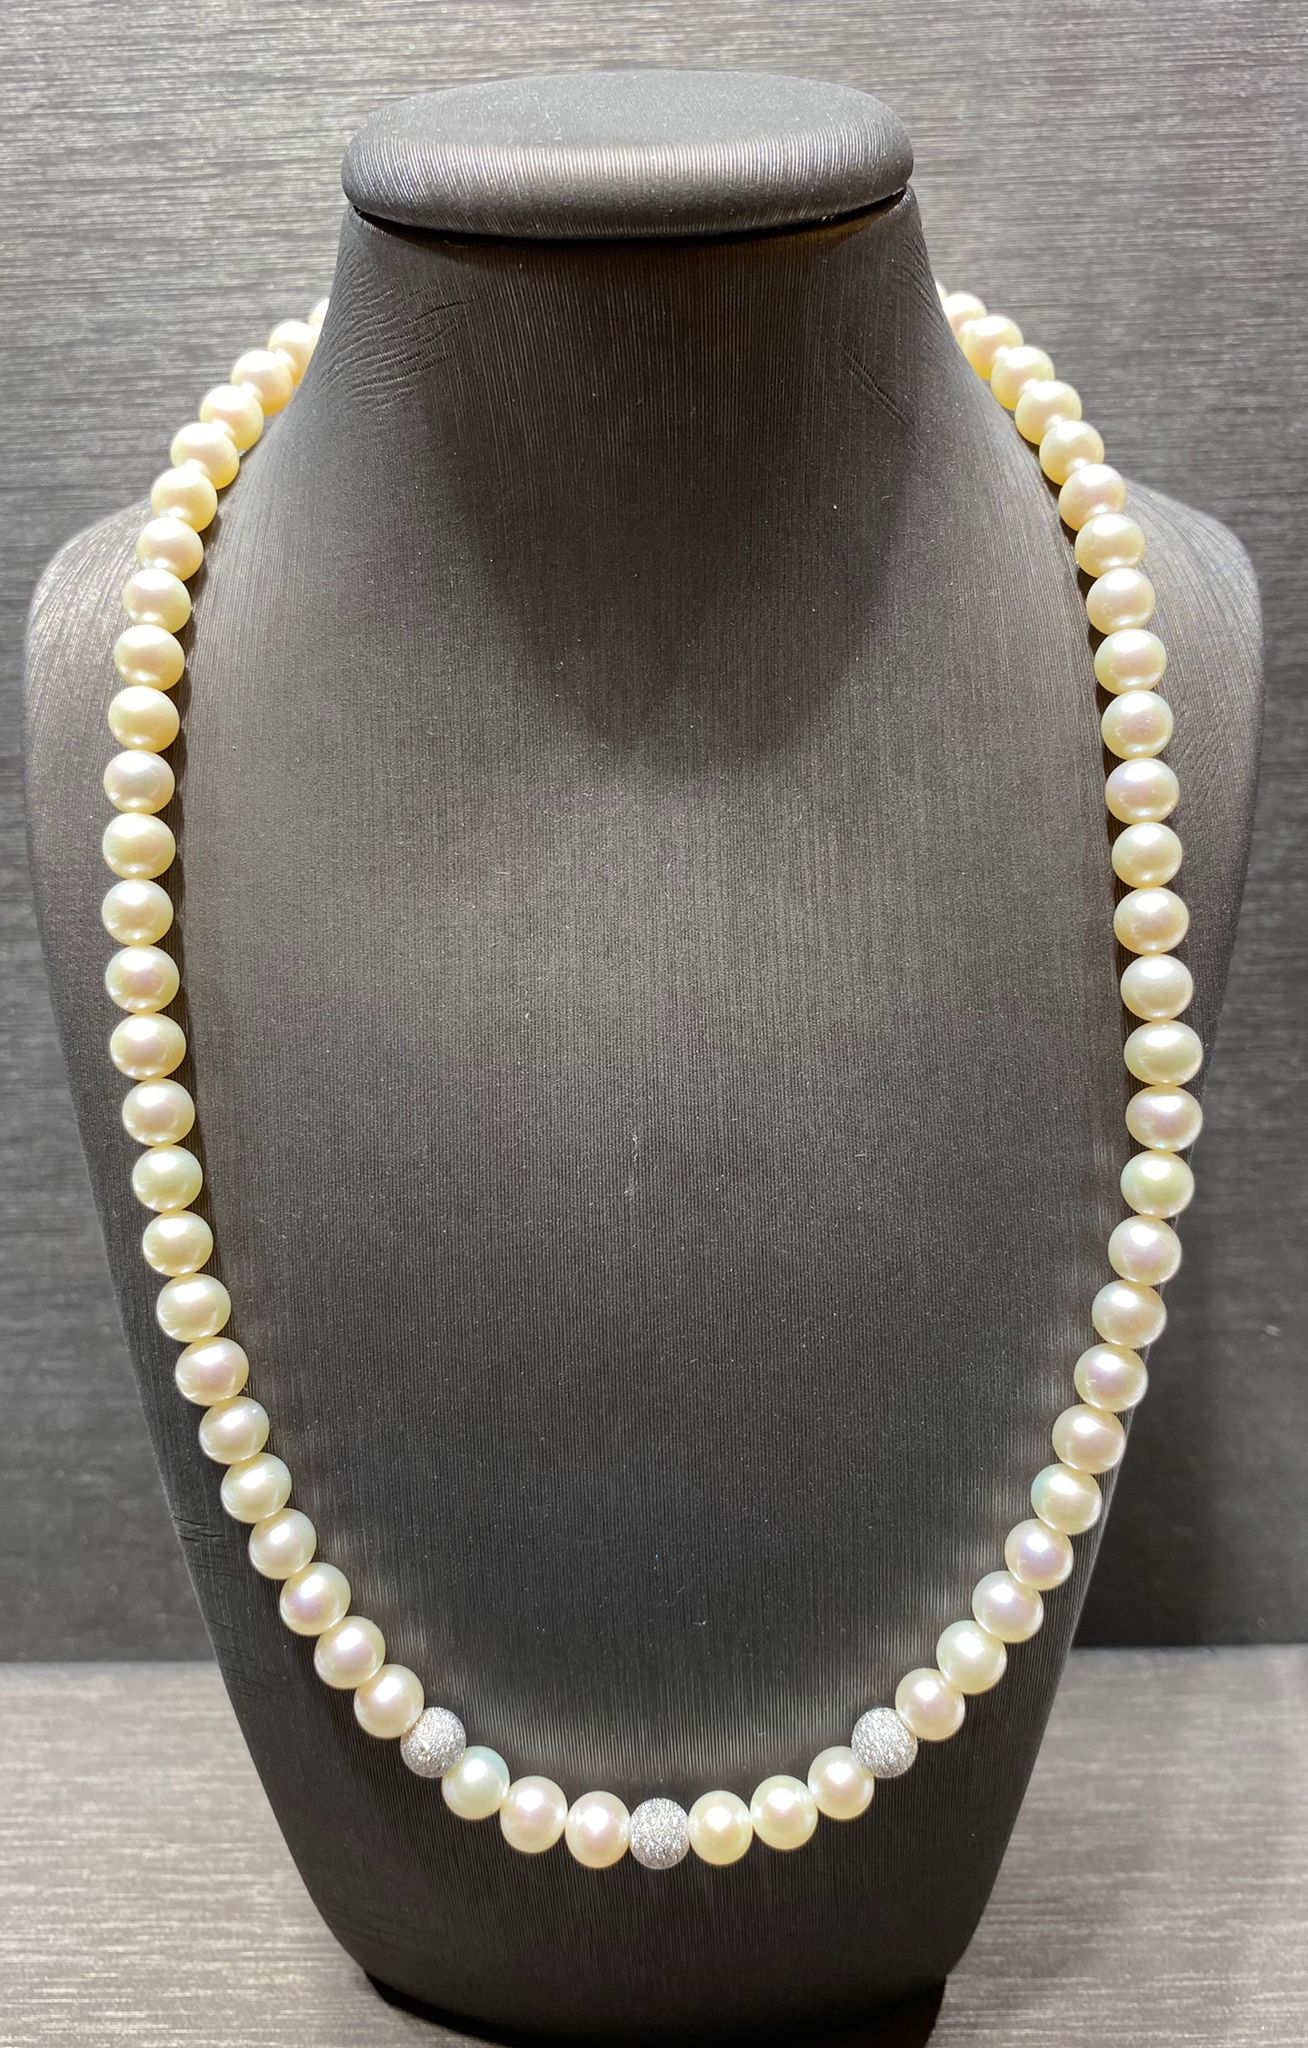 girocollo perle freshwater 6-6,5  mm sfere oro bianco 750% chiusura  oro bianco 750%